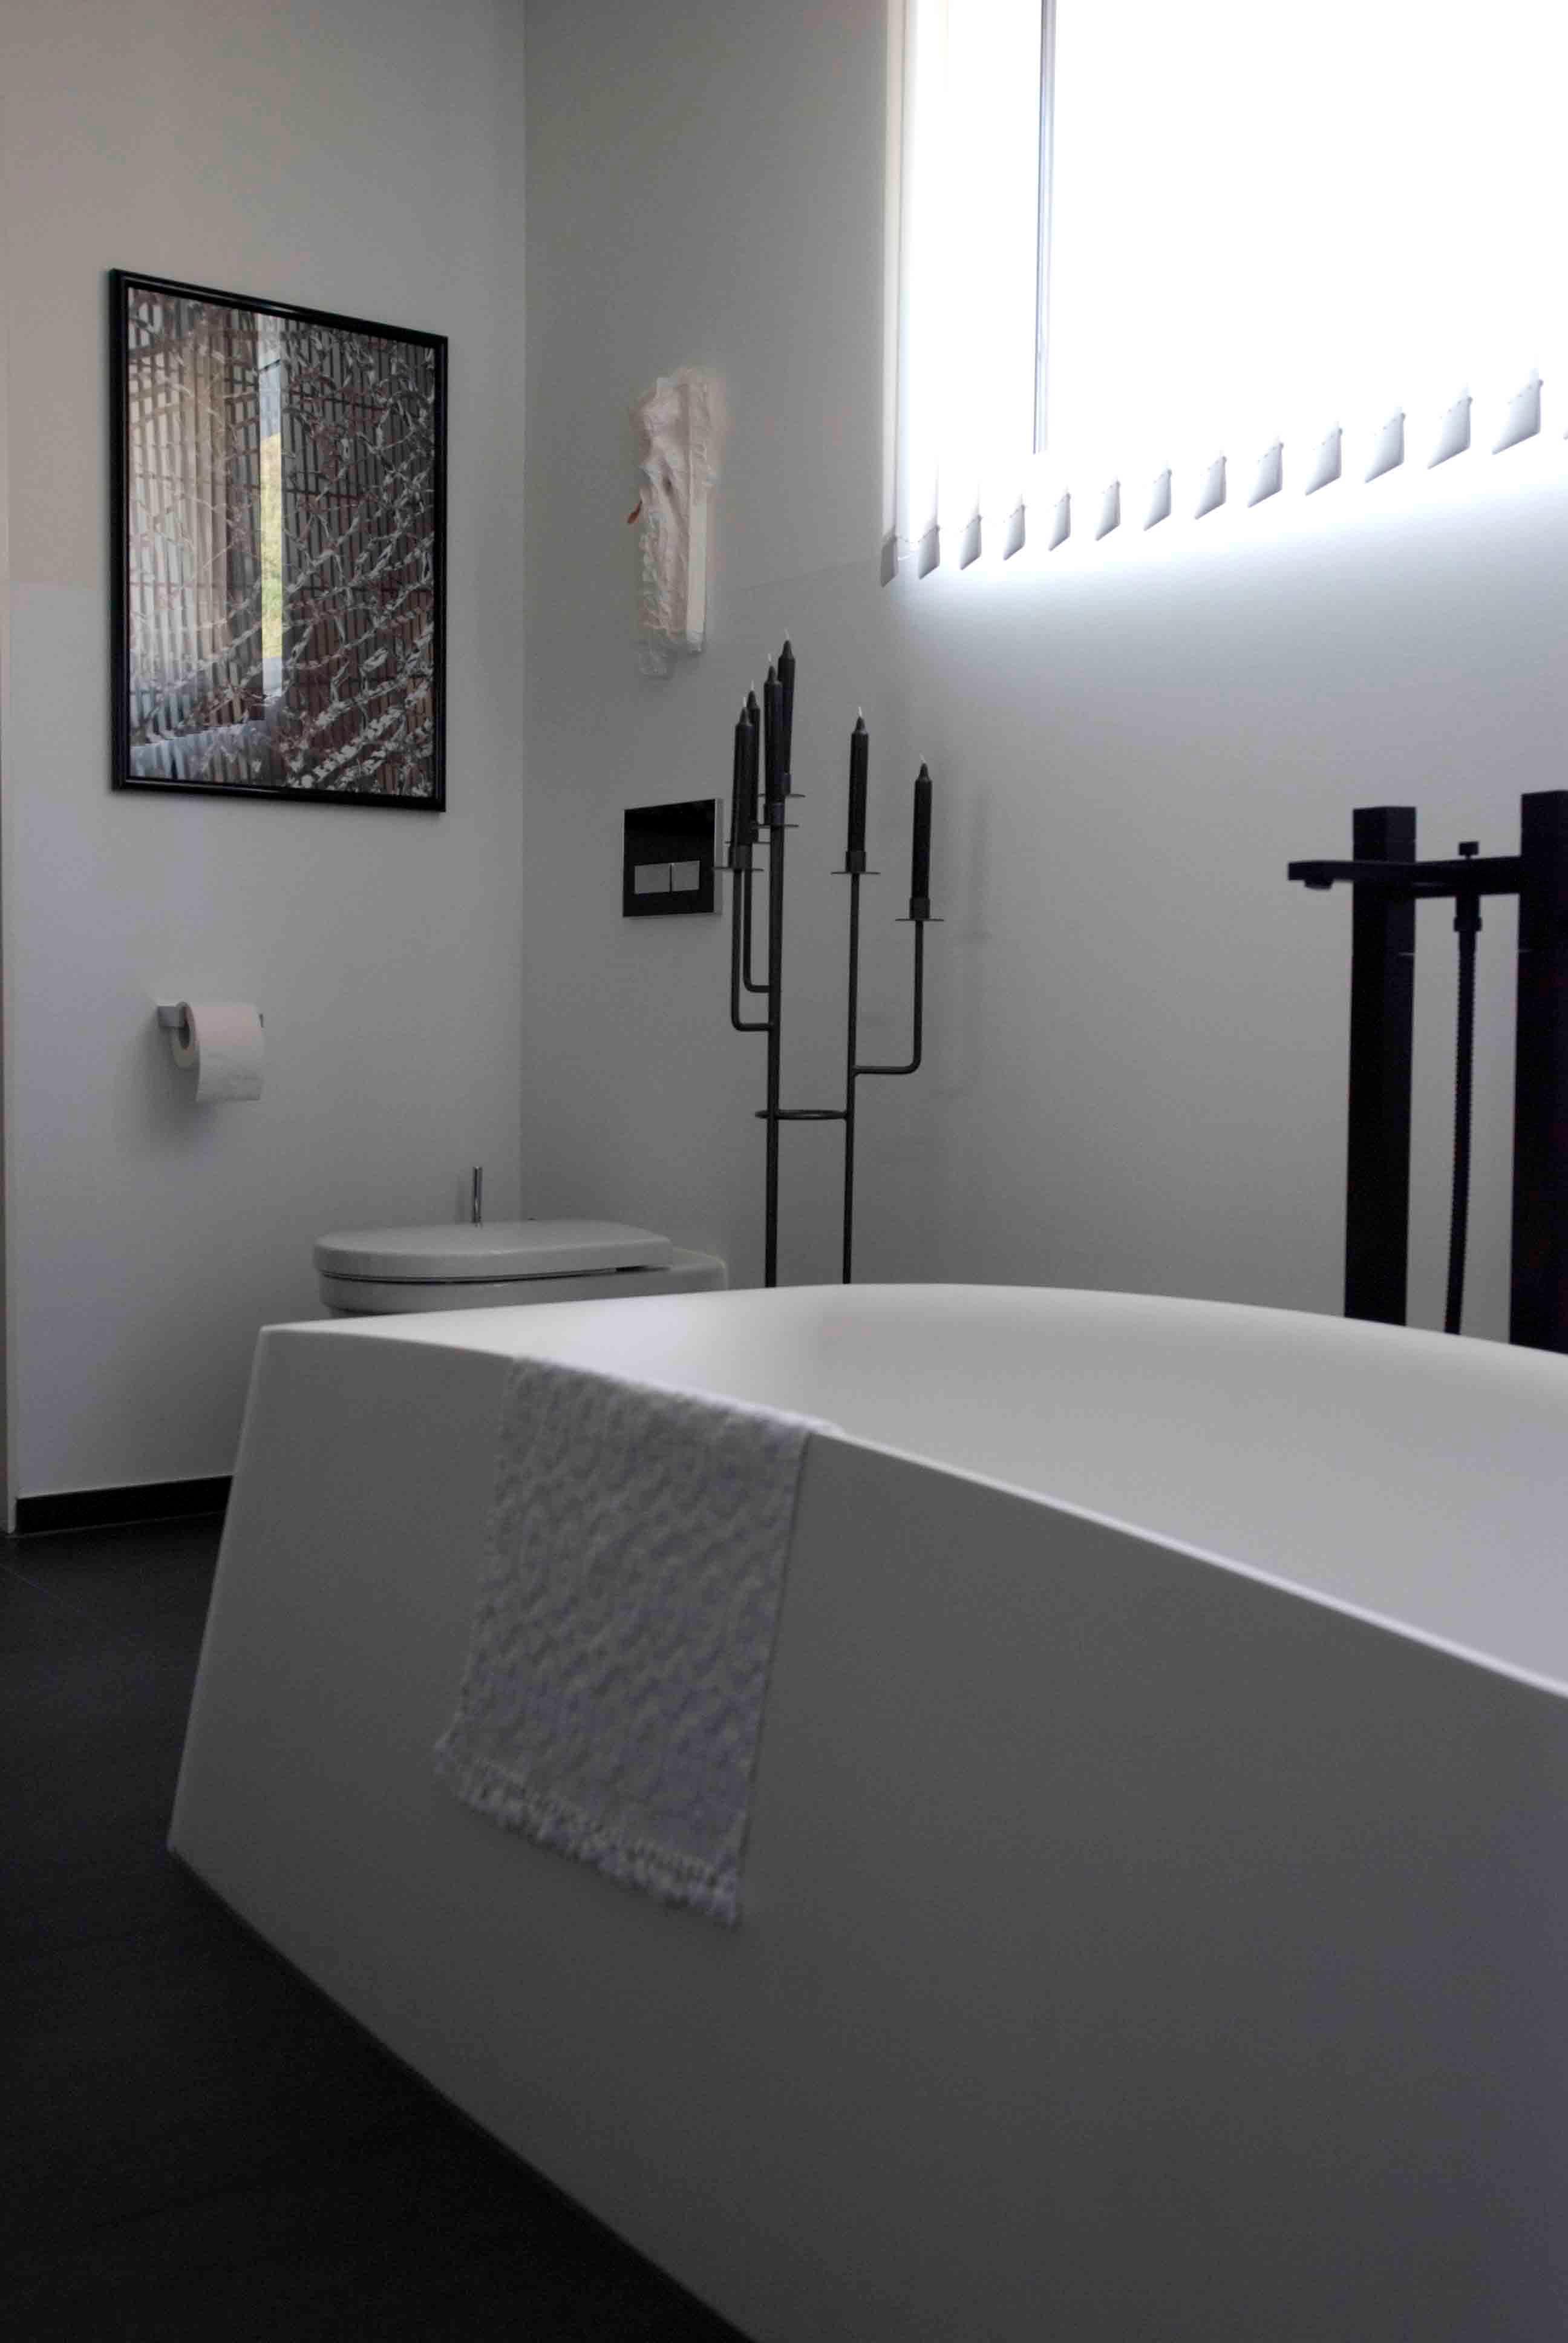  Architektur-Reportage Frick Hanglage: moderne Badewanne und Kerzenständer